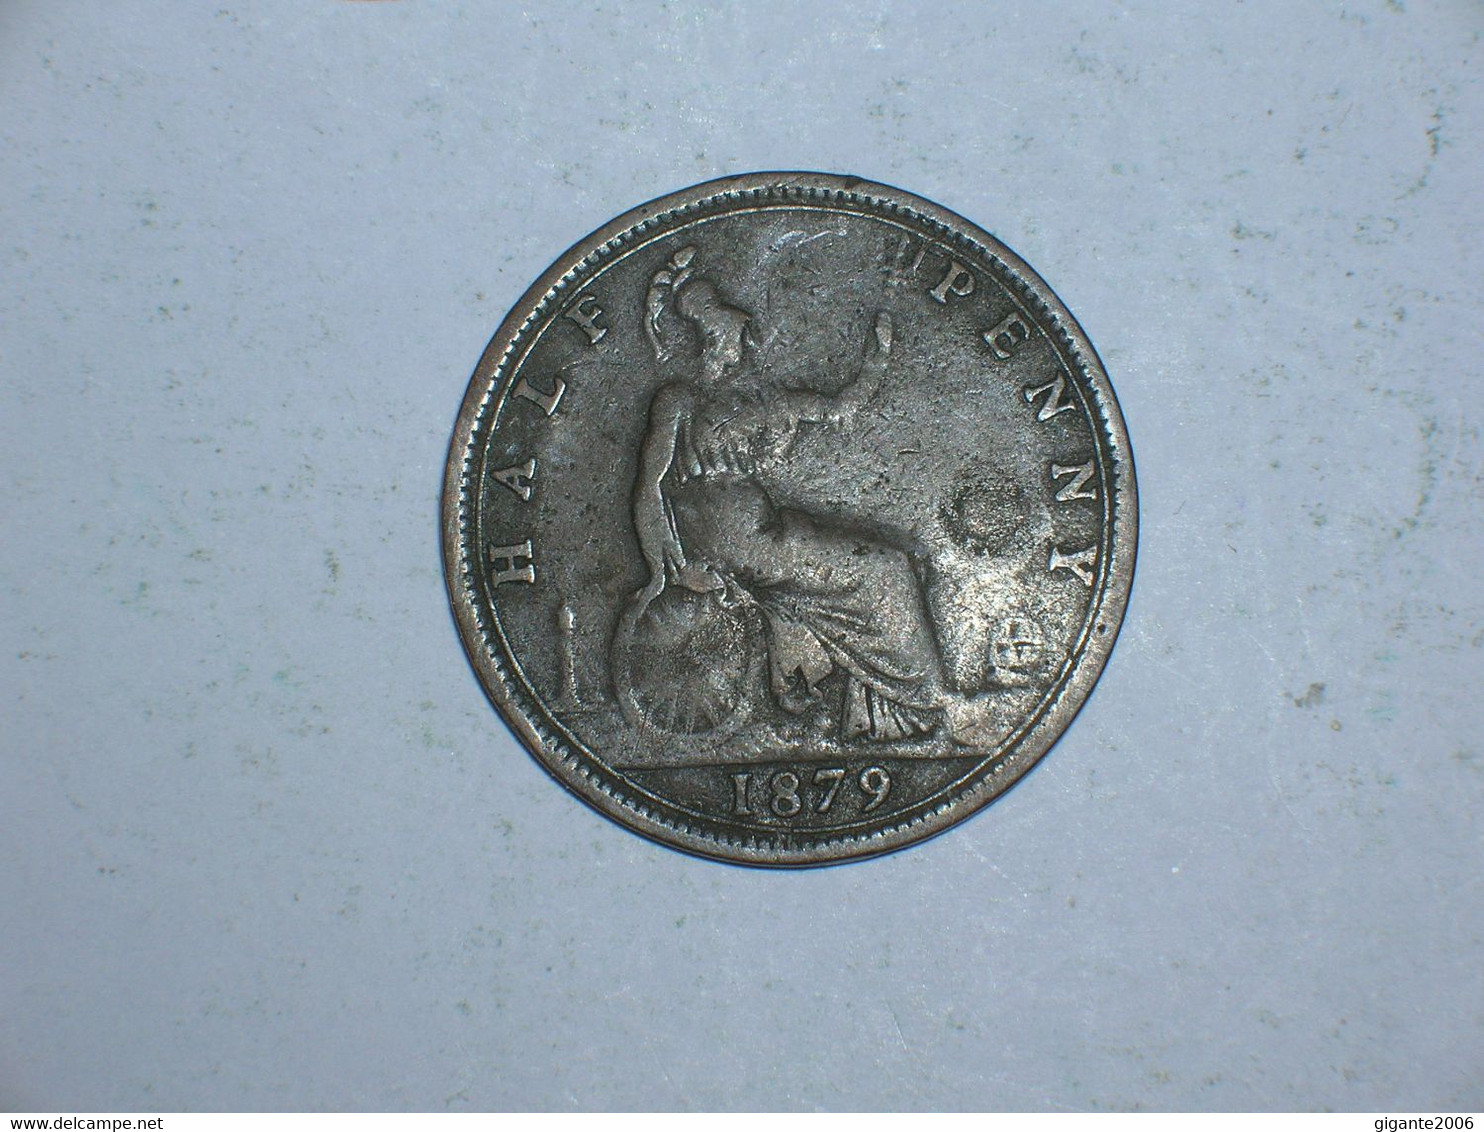 Gran Bretaña.1/2 Penique 1879(11352) - C. 1/2 Penny